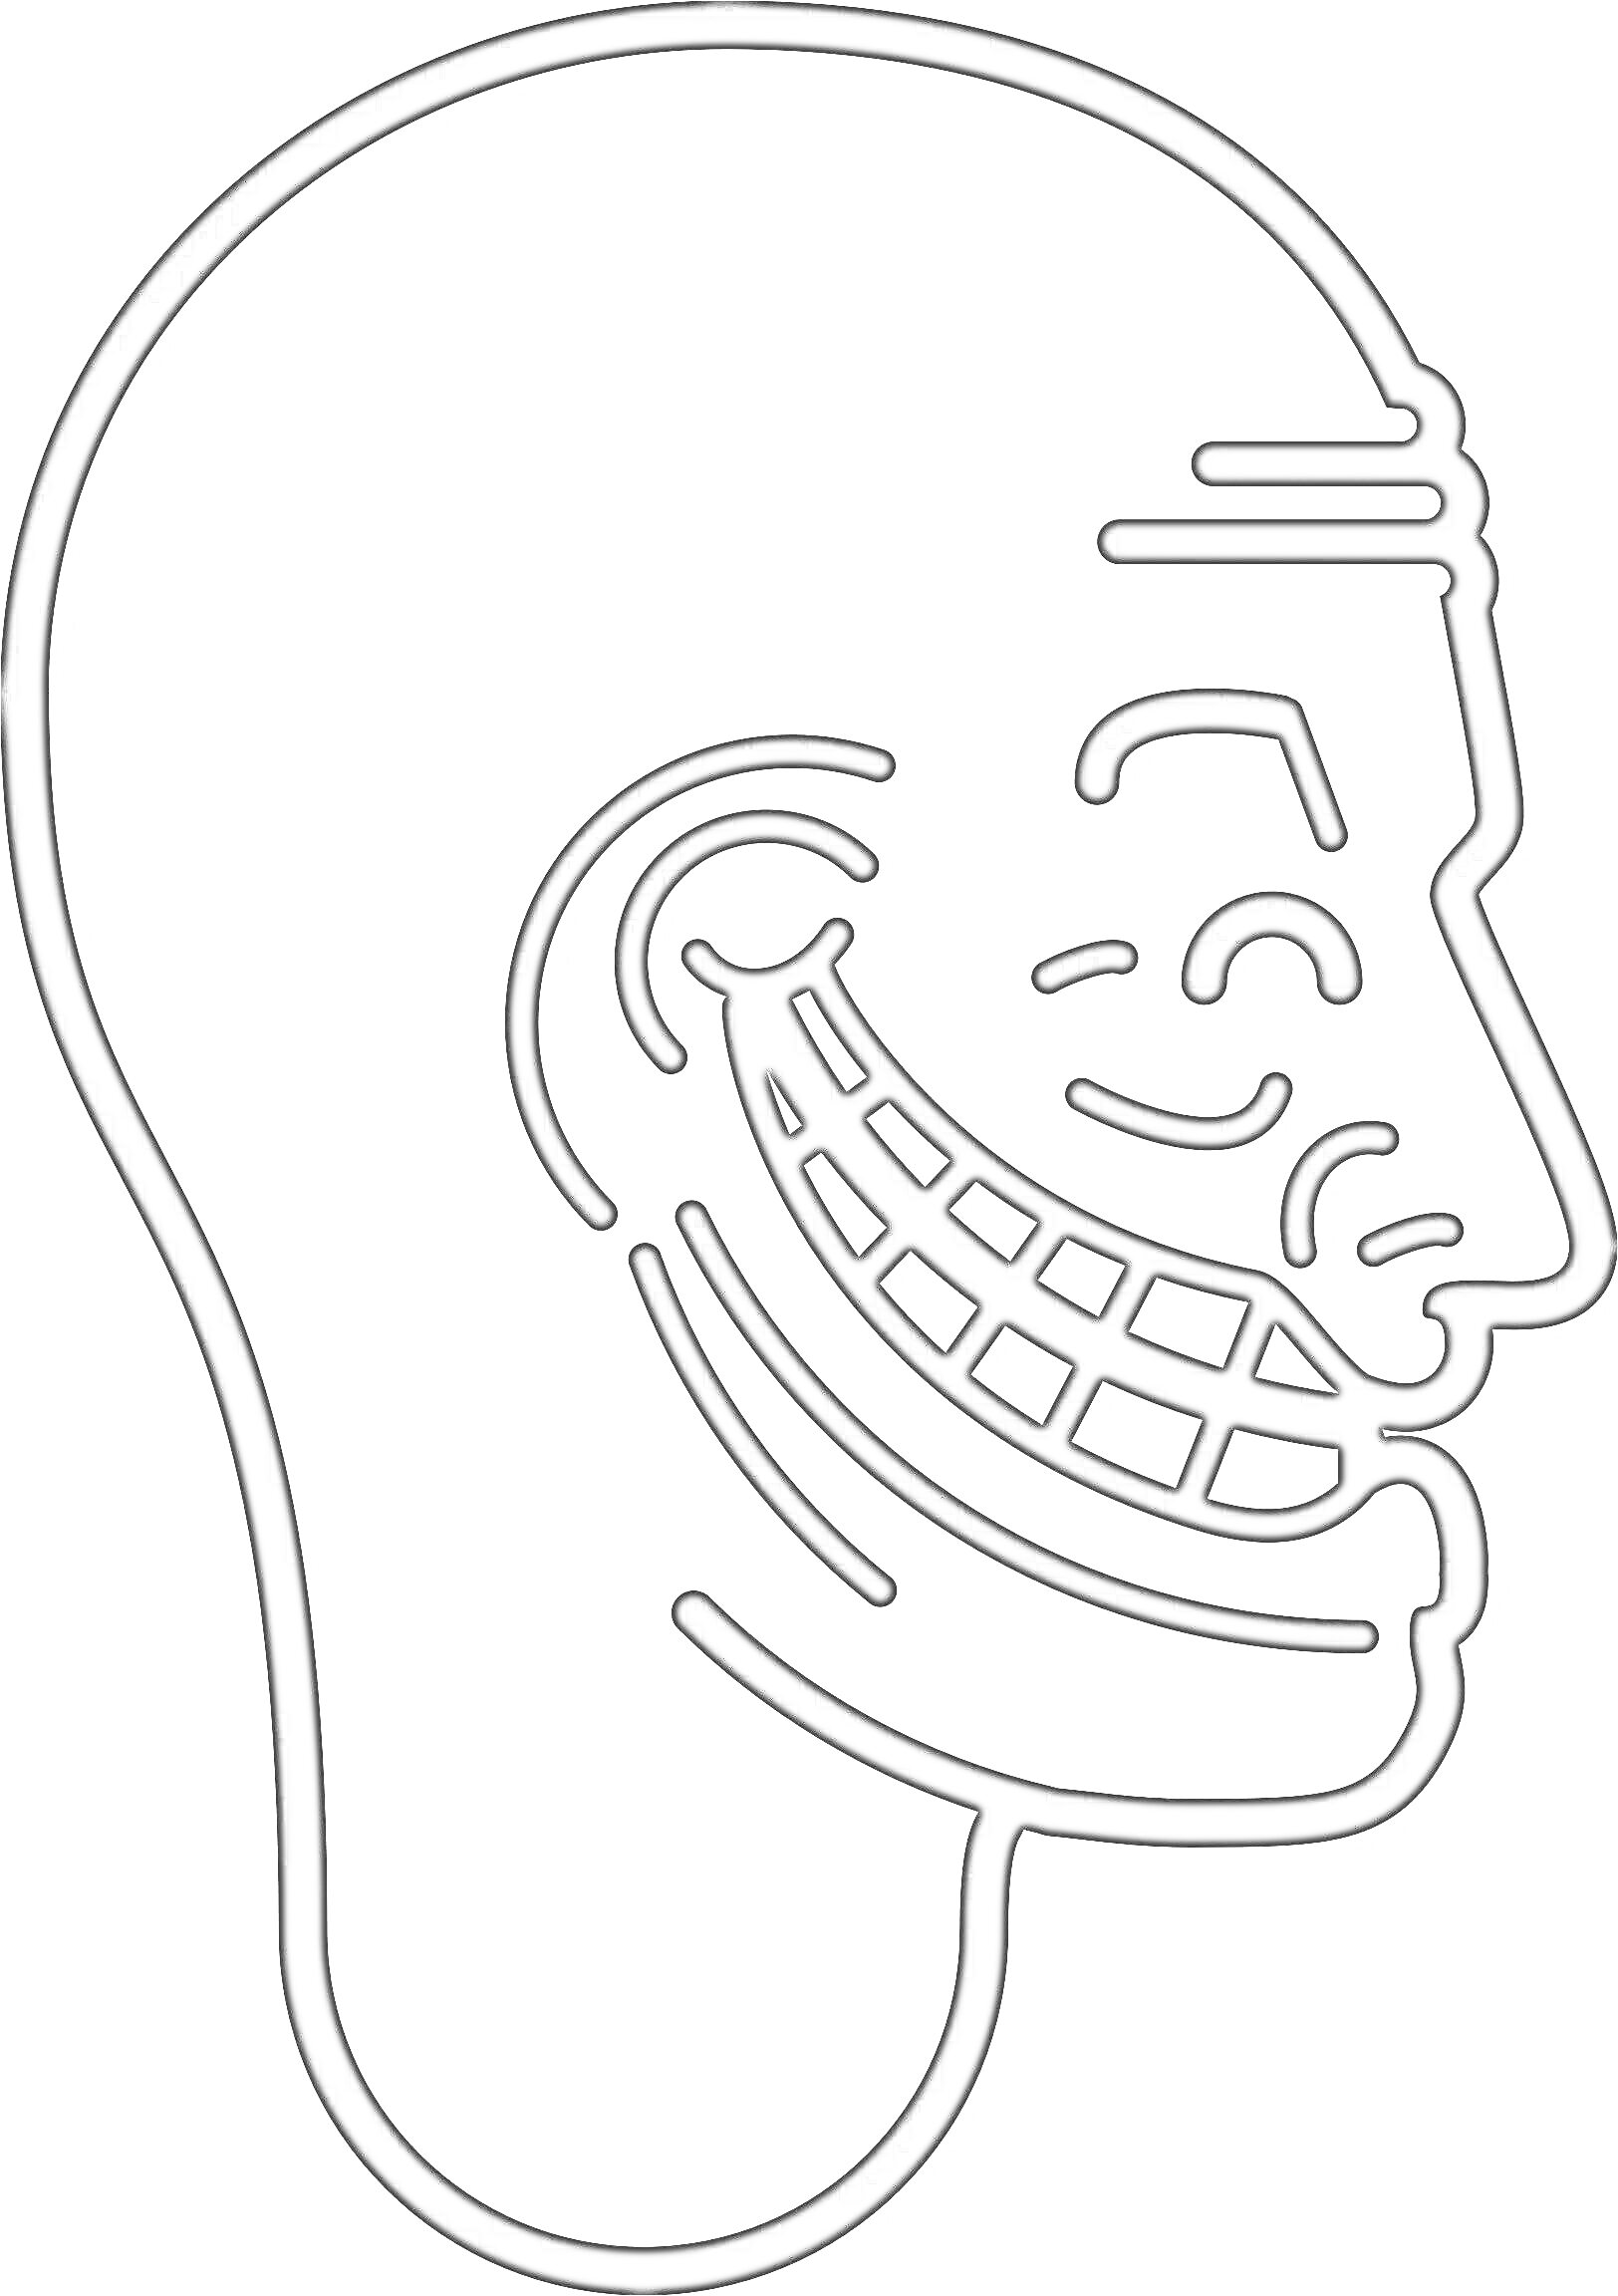 Раскраска Профиль головы с тролль-фейсом и характерной ухмылкой